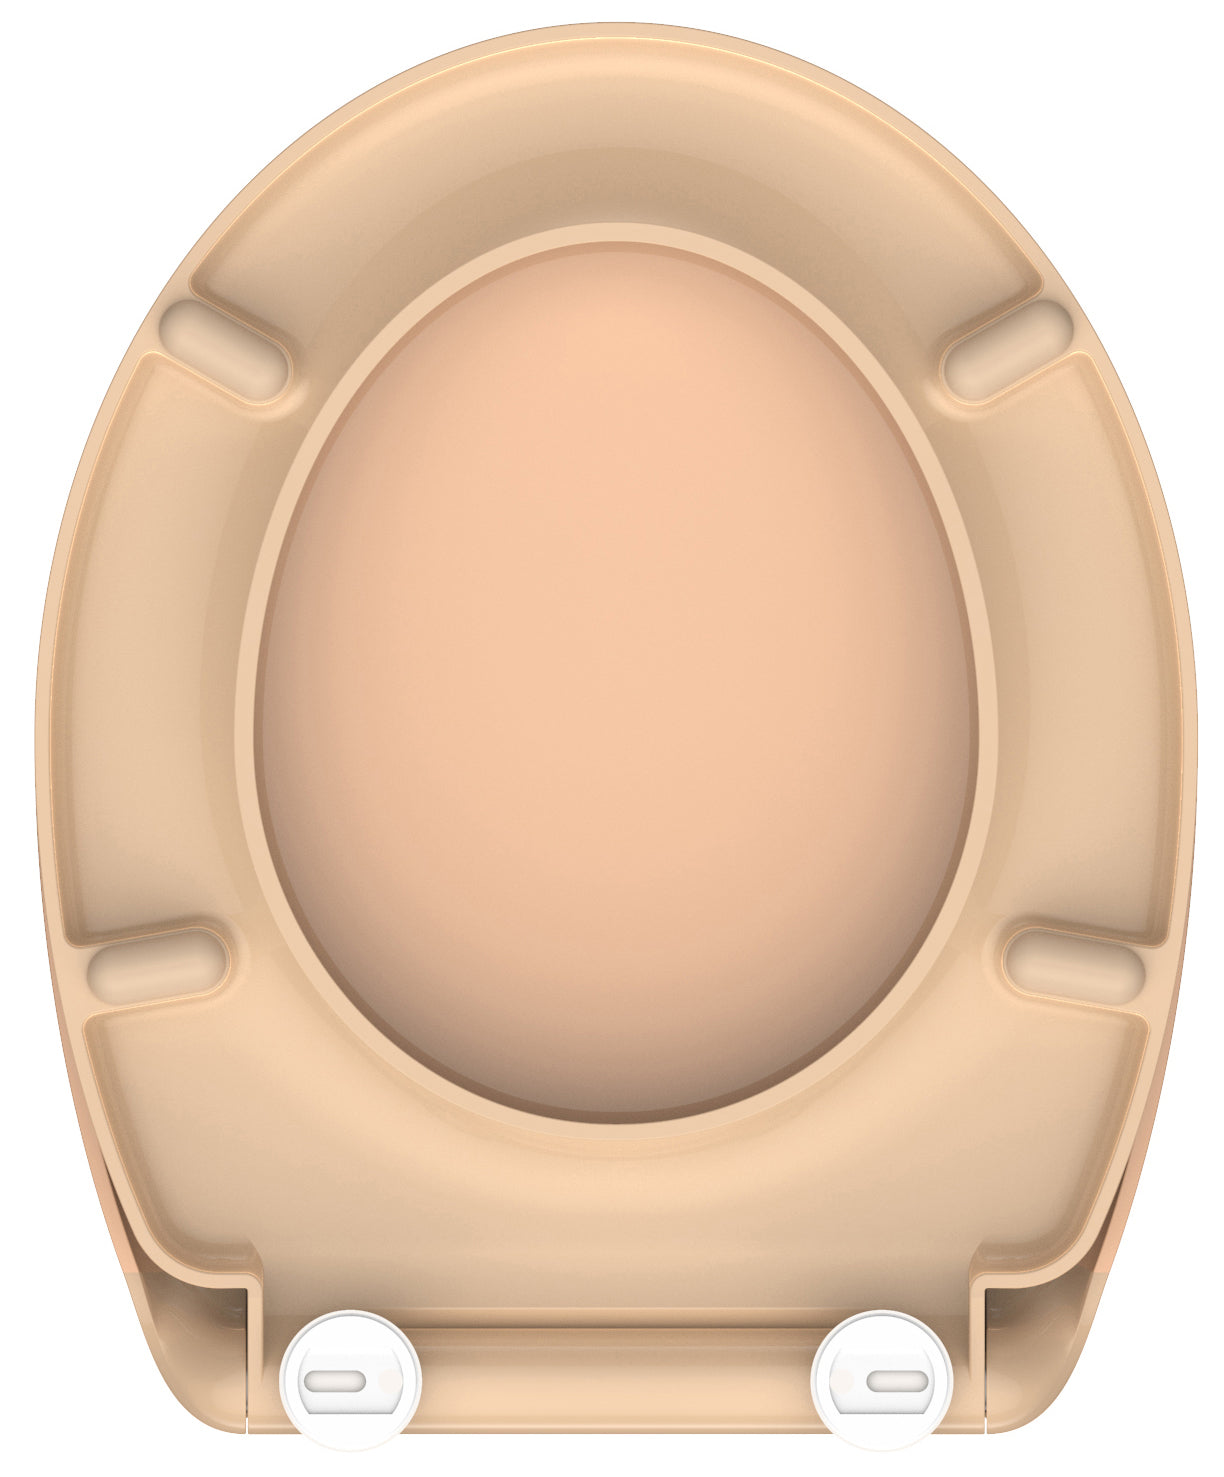 Beige toalettsits universal i Duroplast - BÄST. CC-mått: 90-190mm Längd: 450mm Bredd: 375mm.